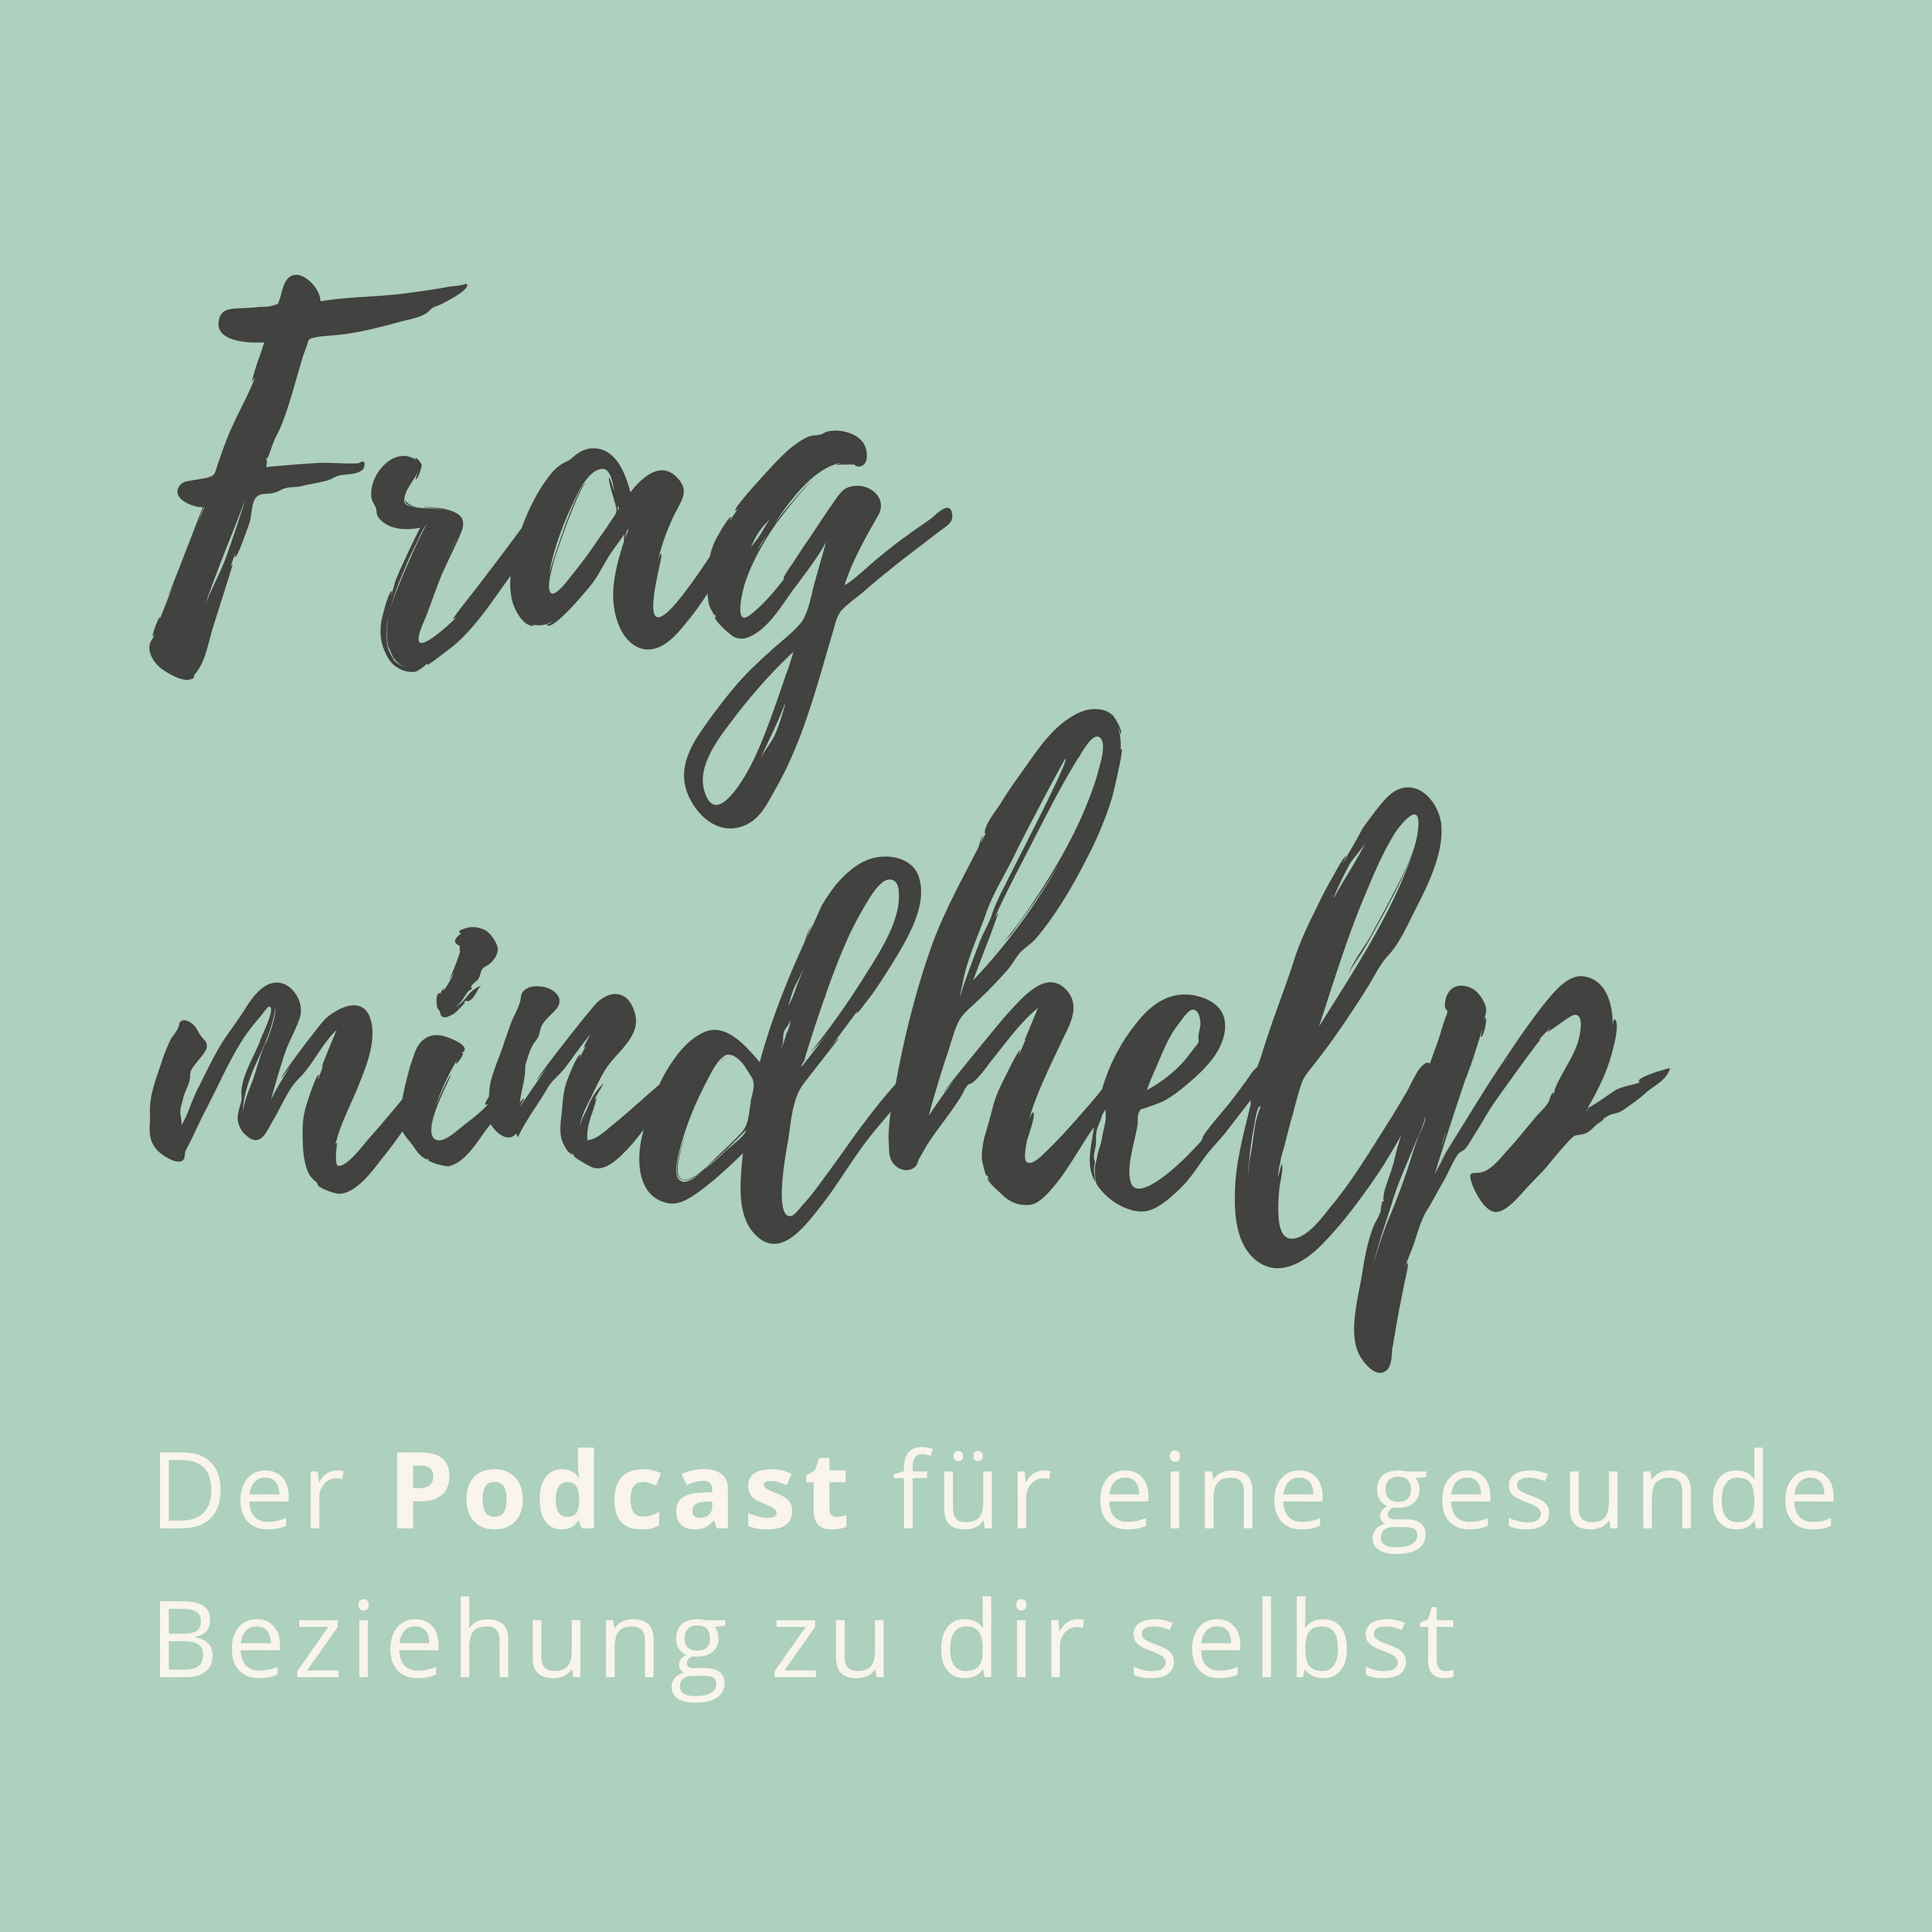 Frag mindhelp - Der Podcast für eine gesunde Beziehung zu dir selbst